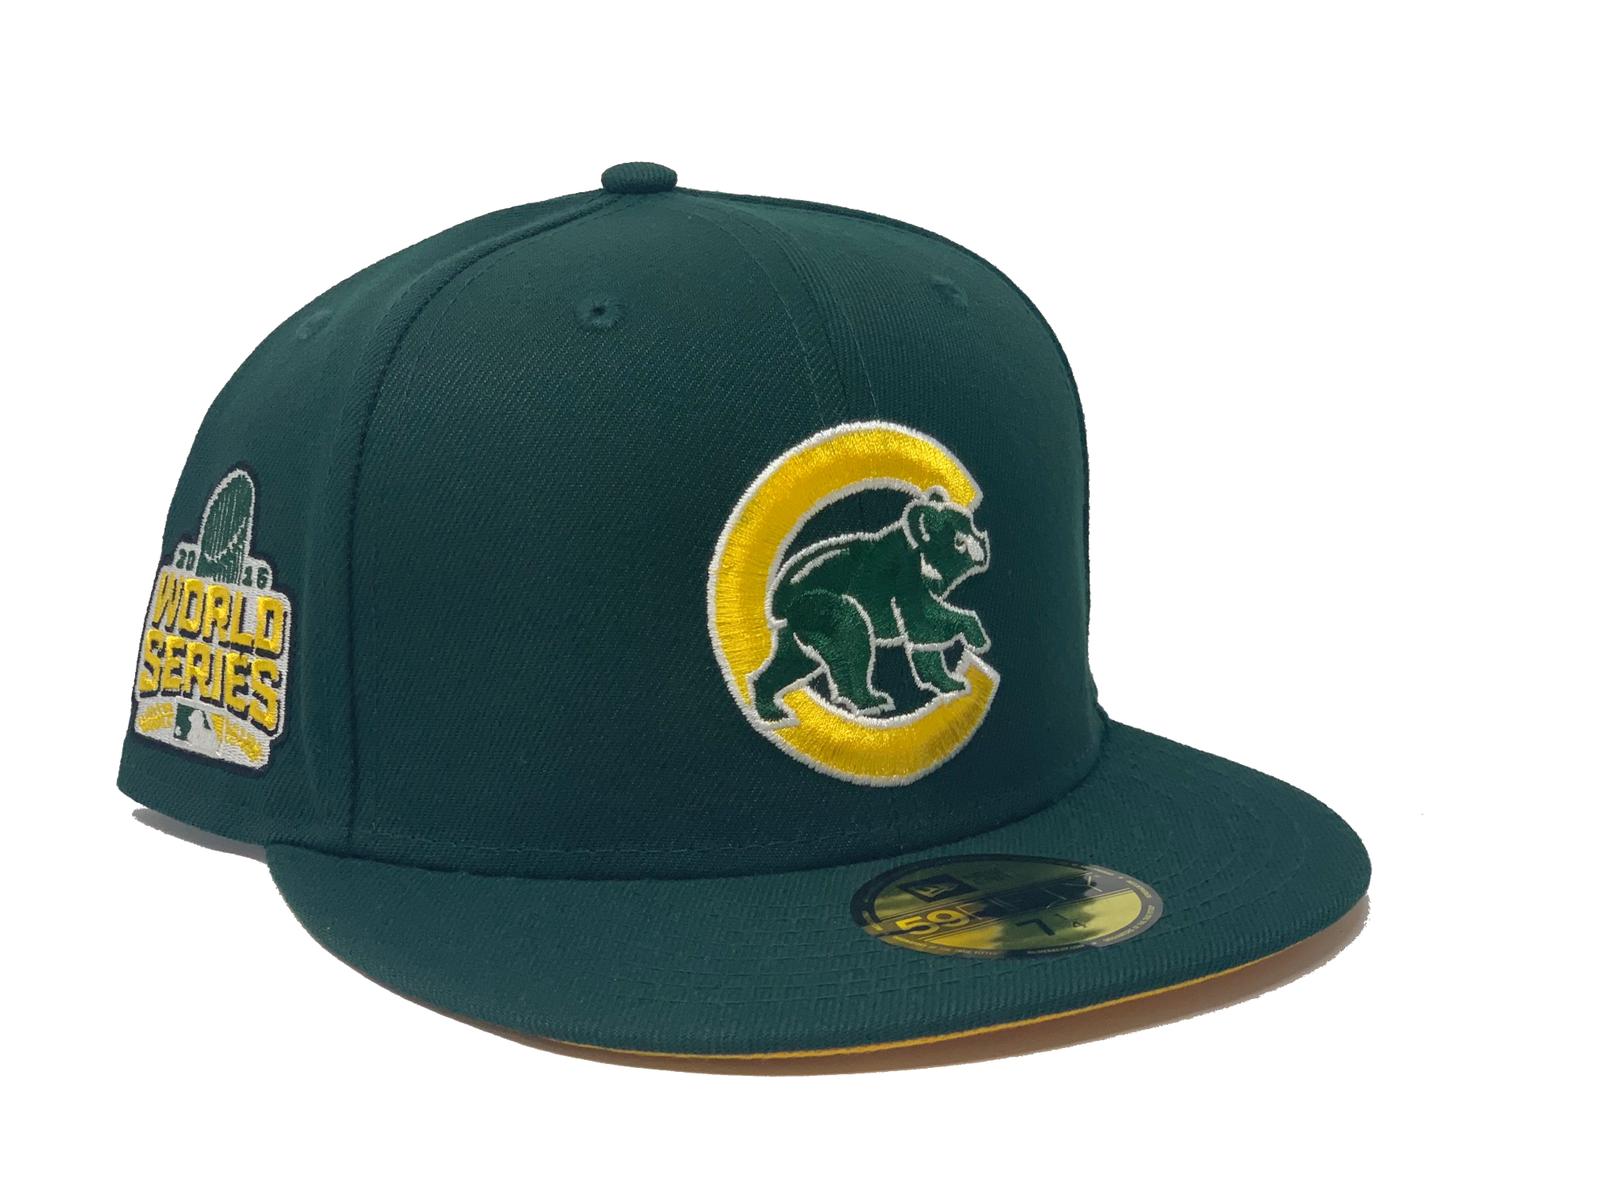 Chicago Cubs Baseball Team Trucker Hat – Cap World USA